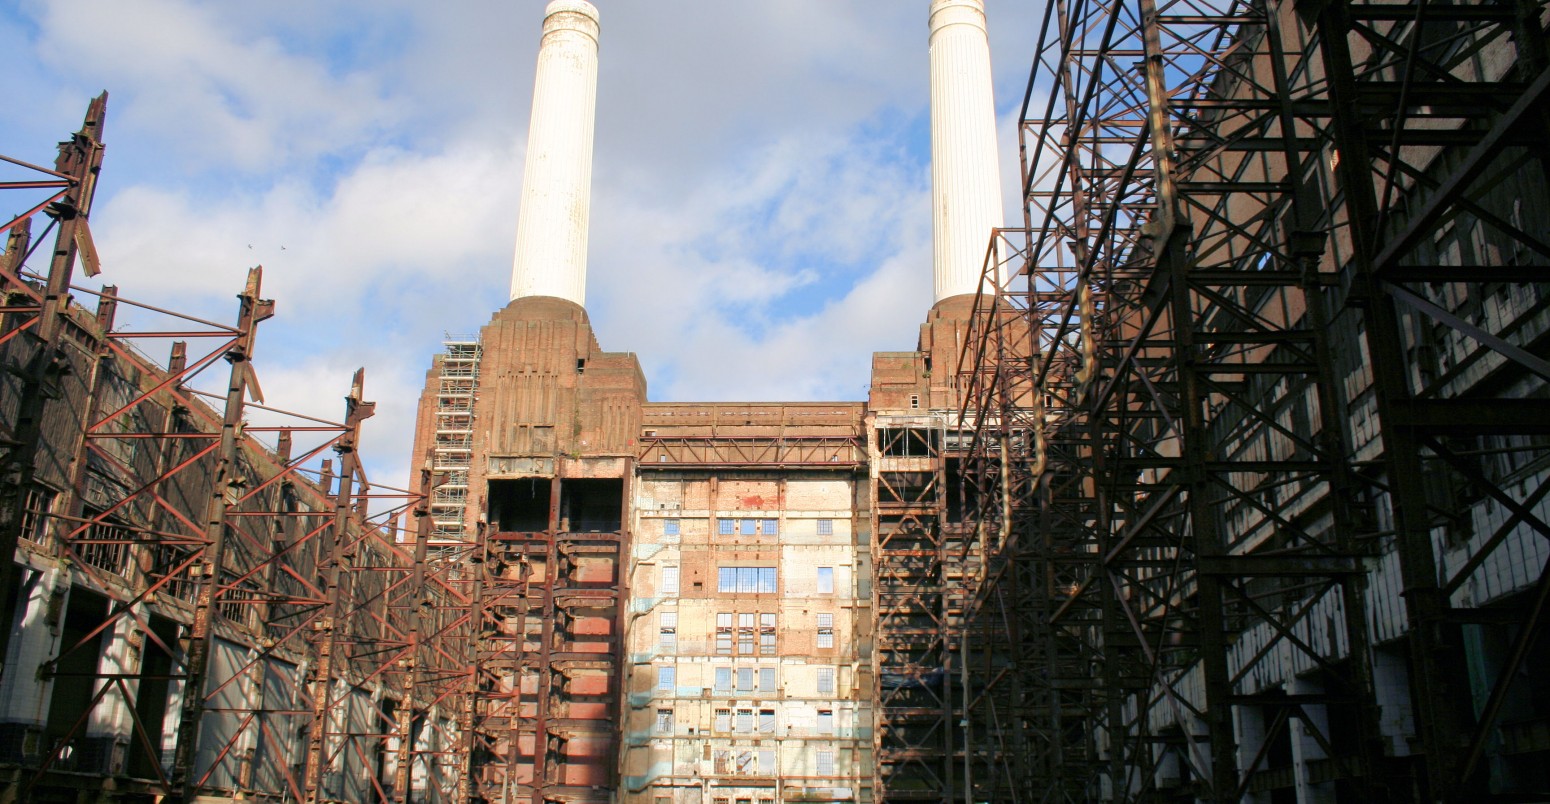 Inside Battersea power station